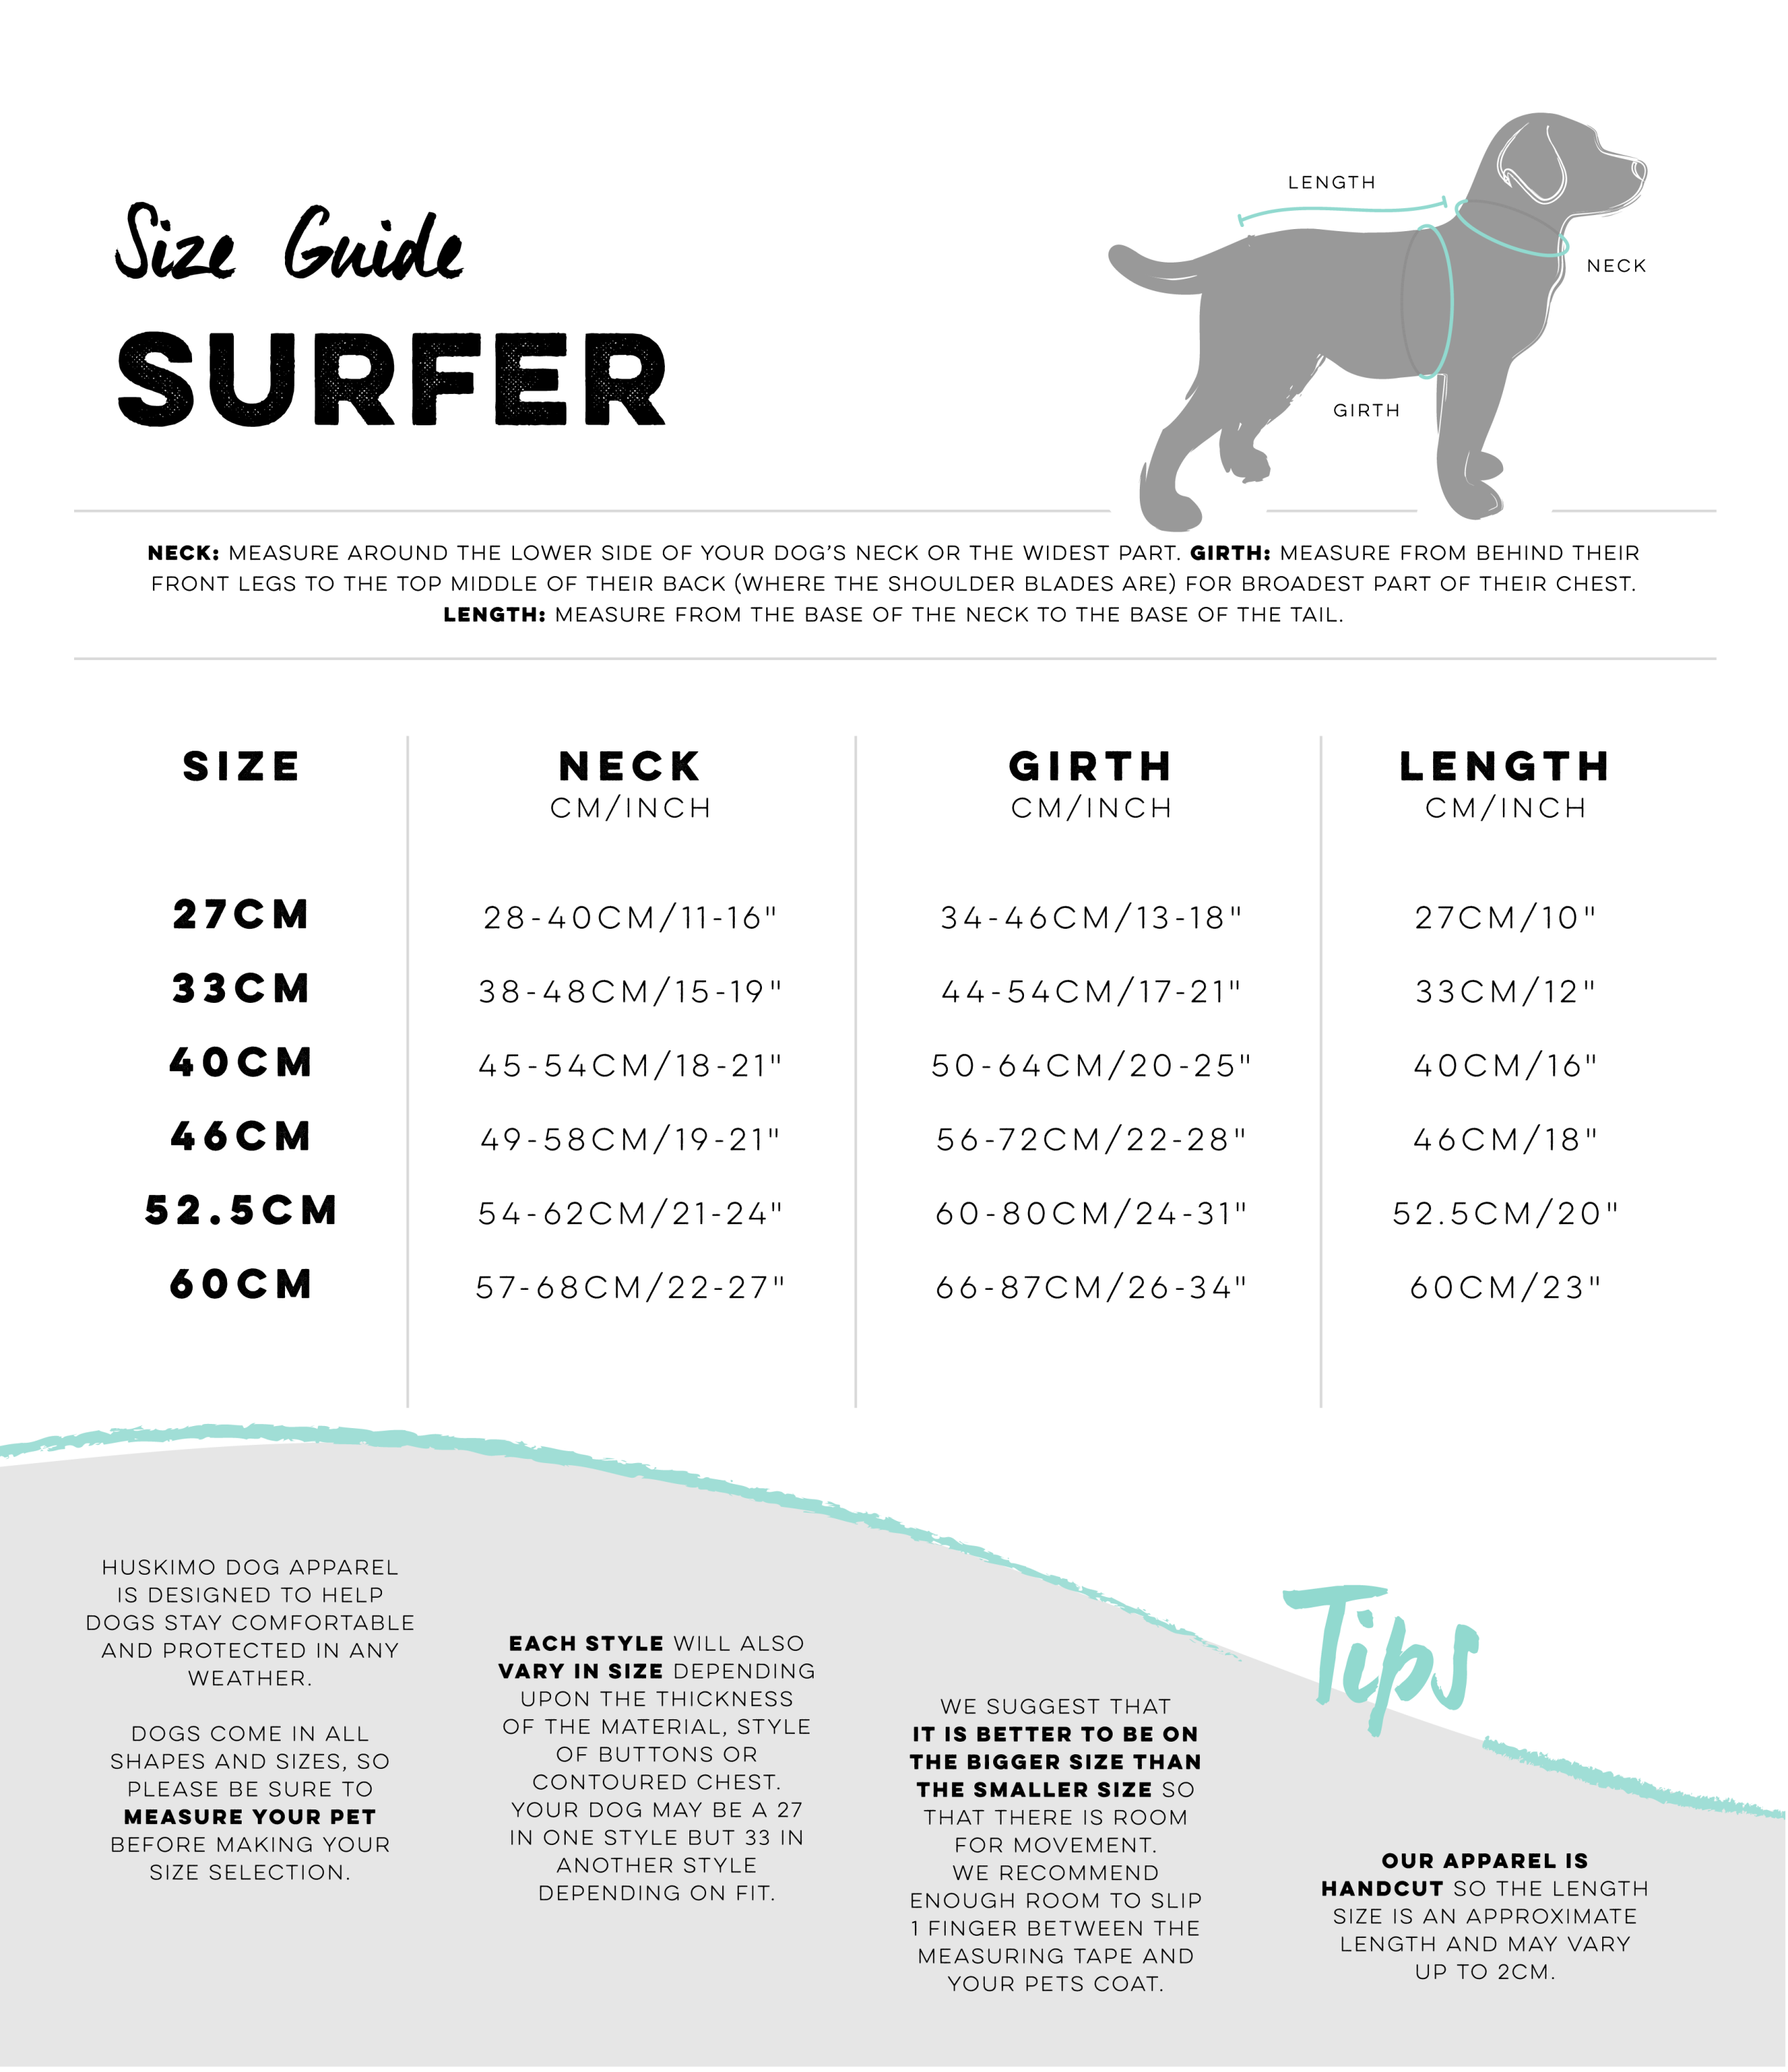 Surfer Coat size guide